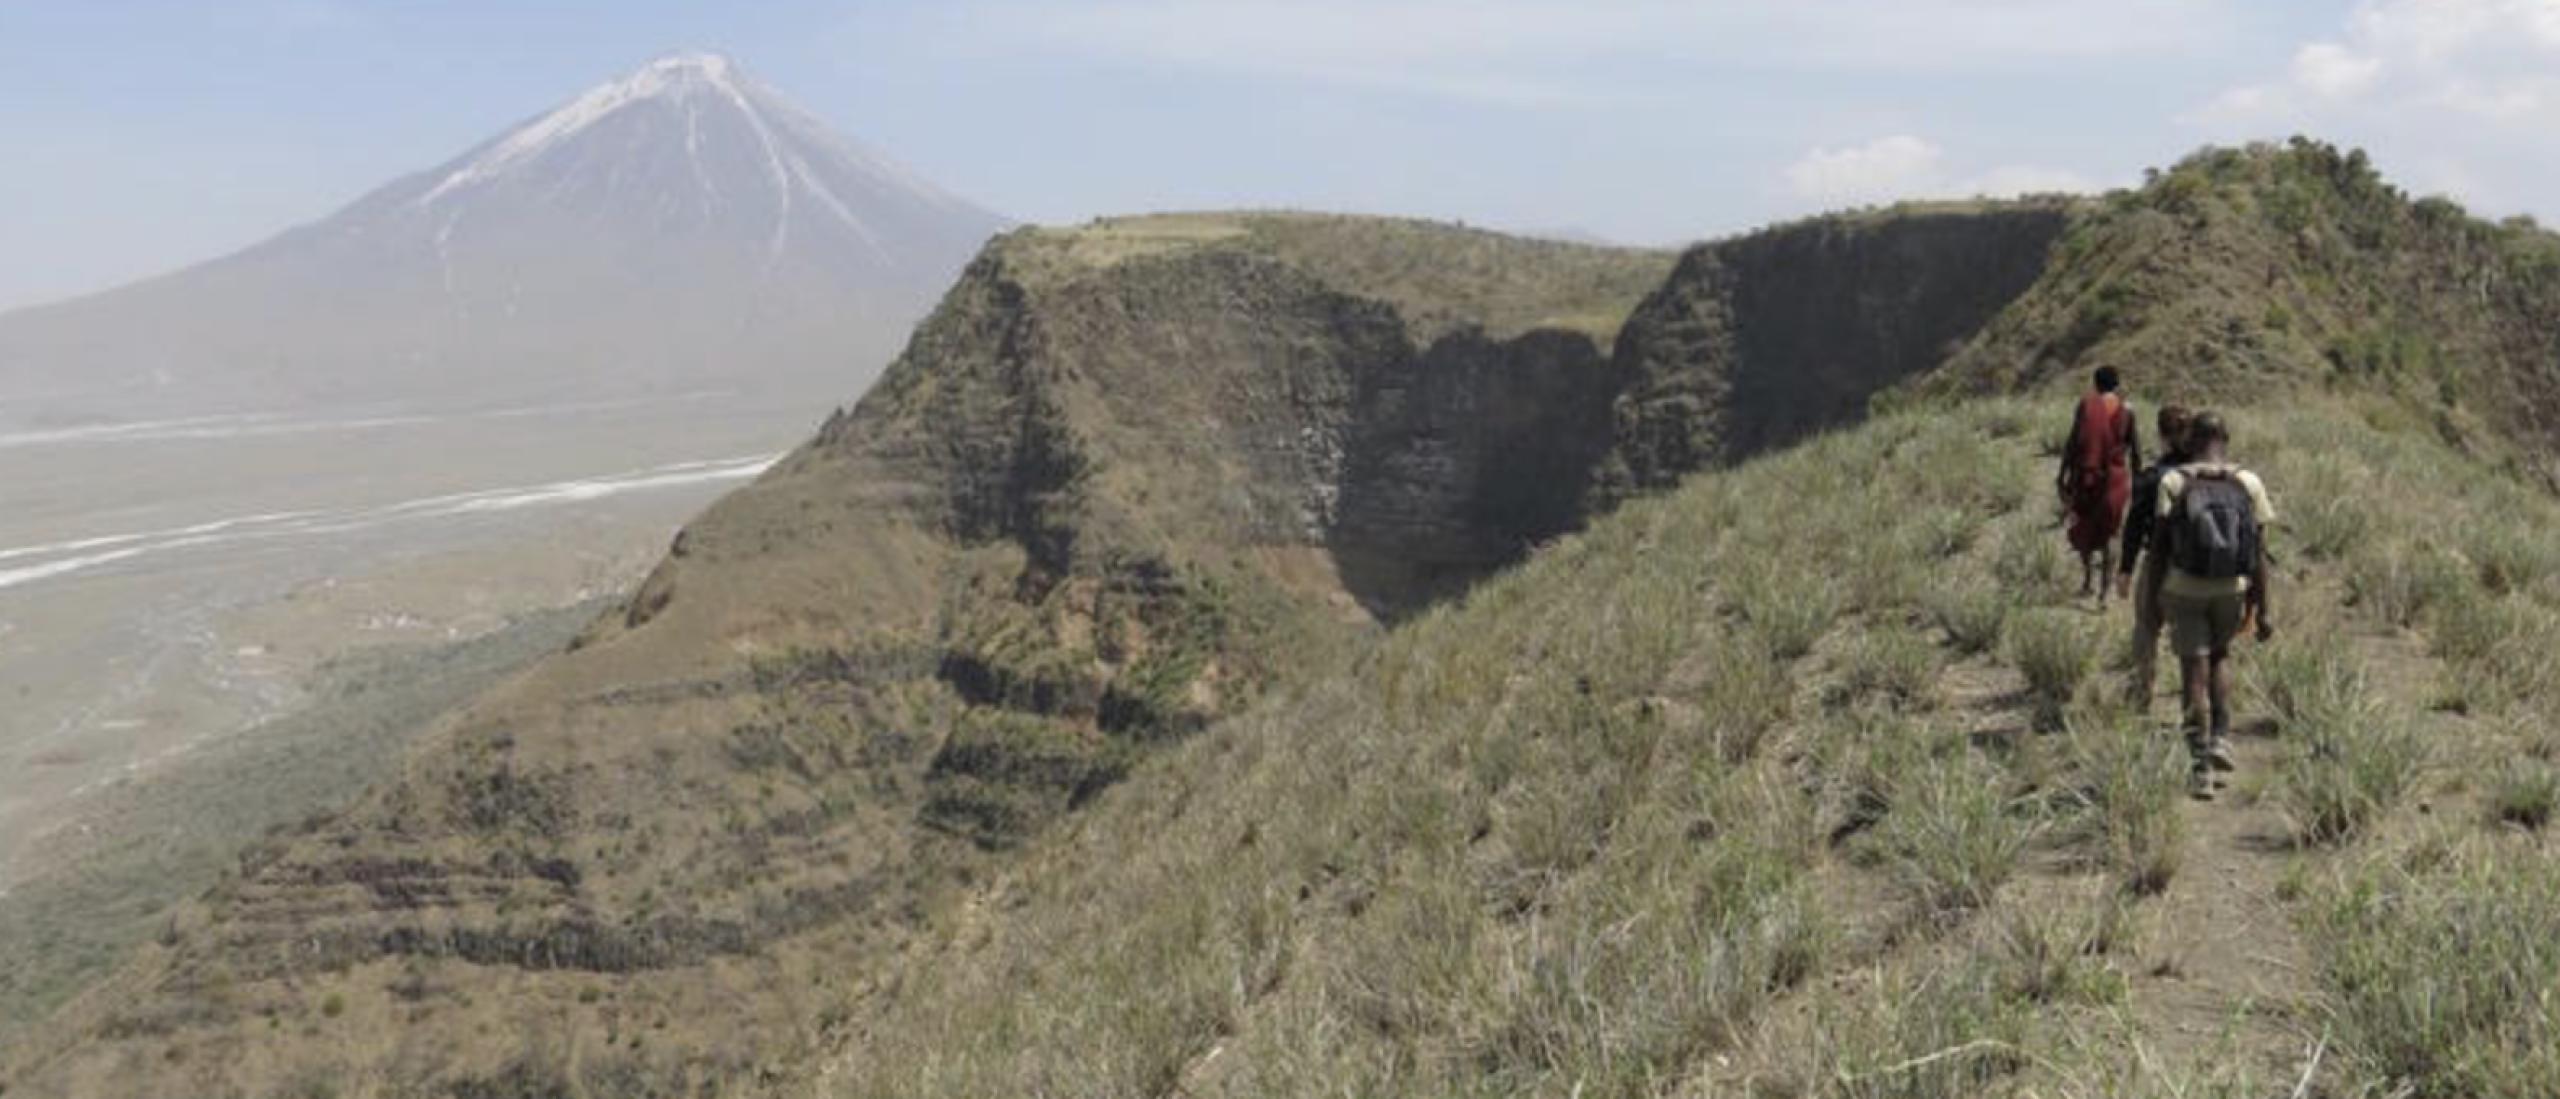 Wandel over de Rift Valley in Tanzania in de Ngorongoro highlands